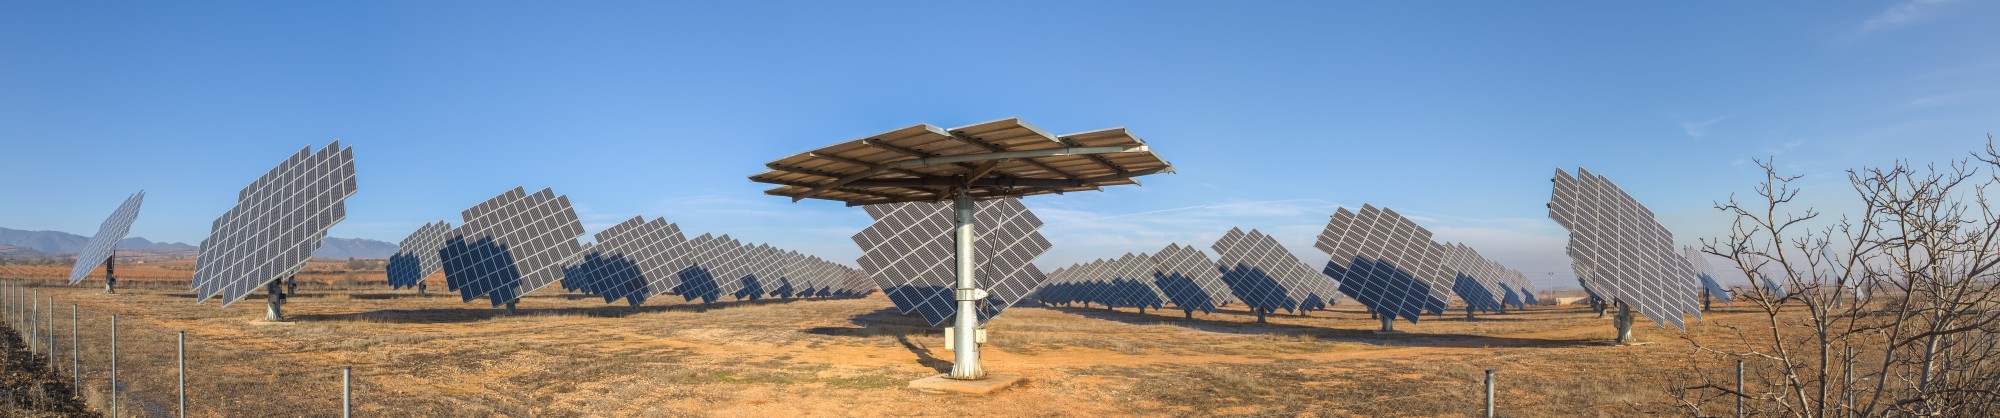 Paneles solares en Cariñena, España, 2015-01-08, DD 09-12 PAN